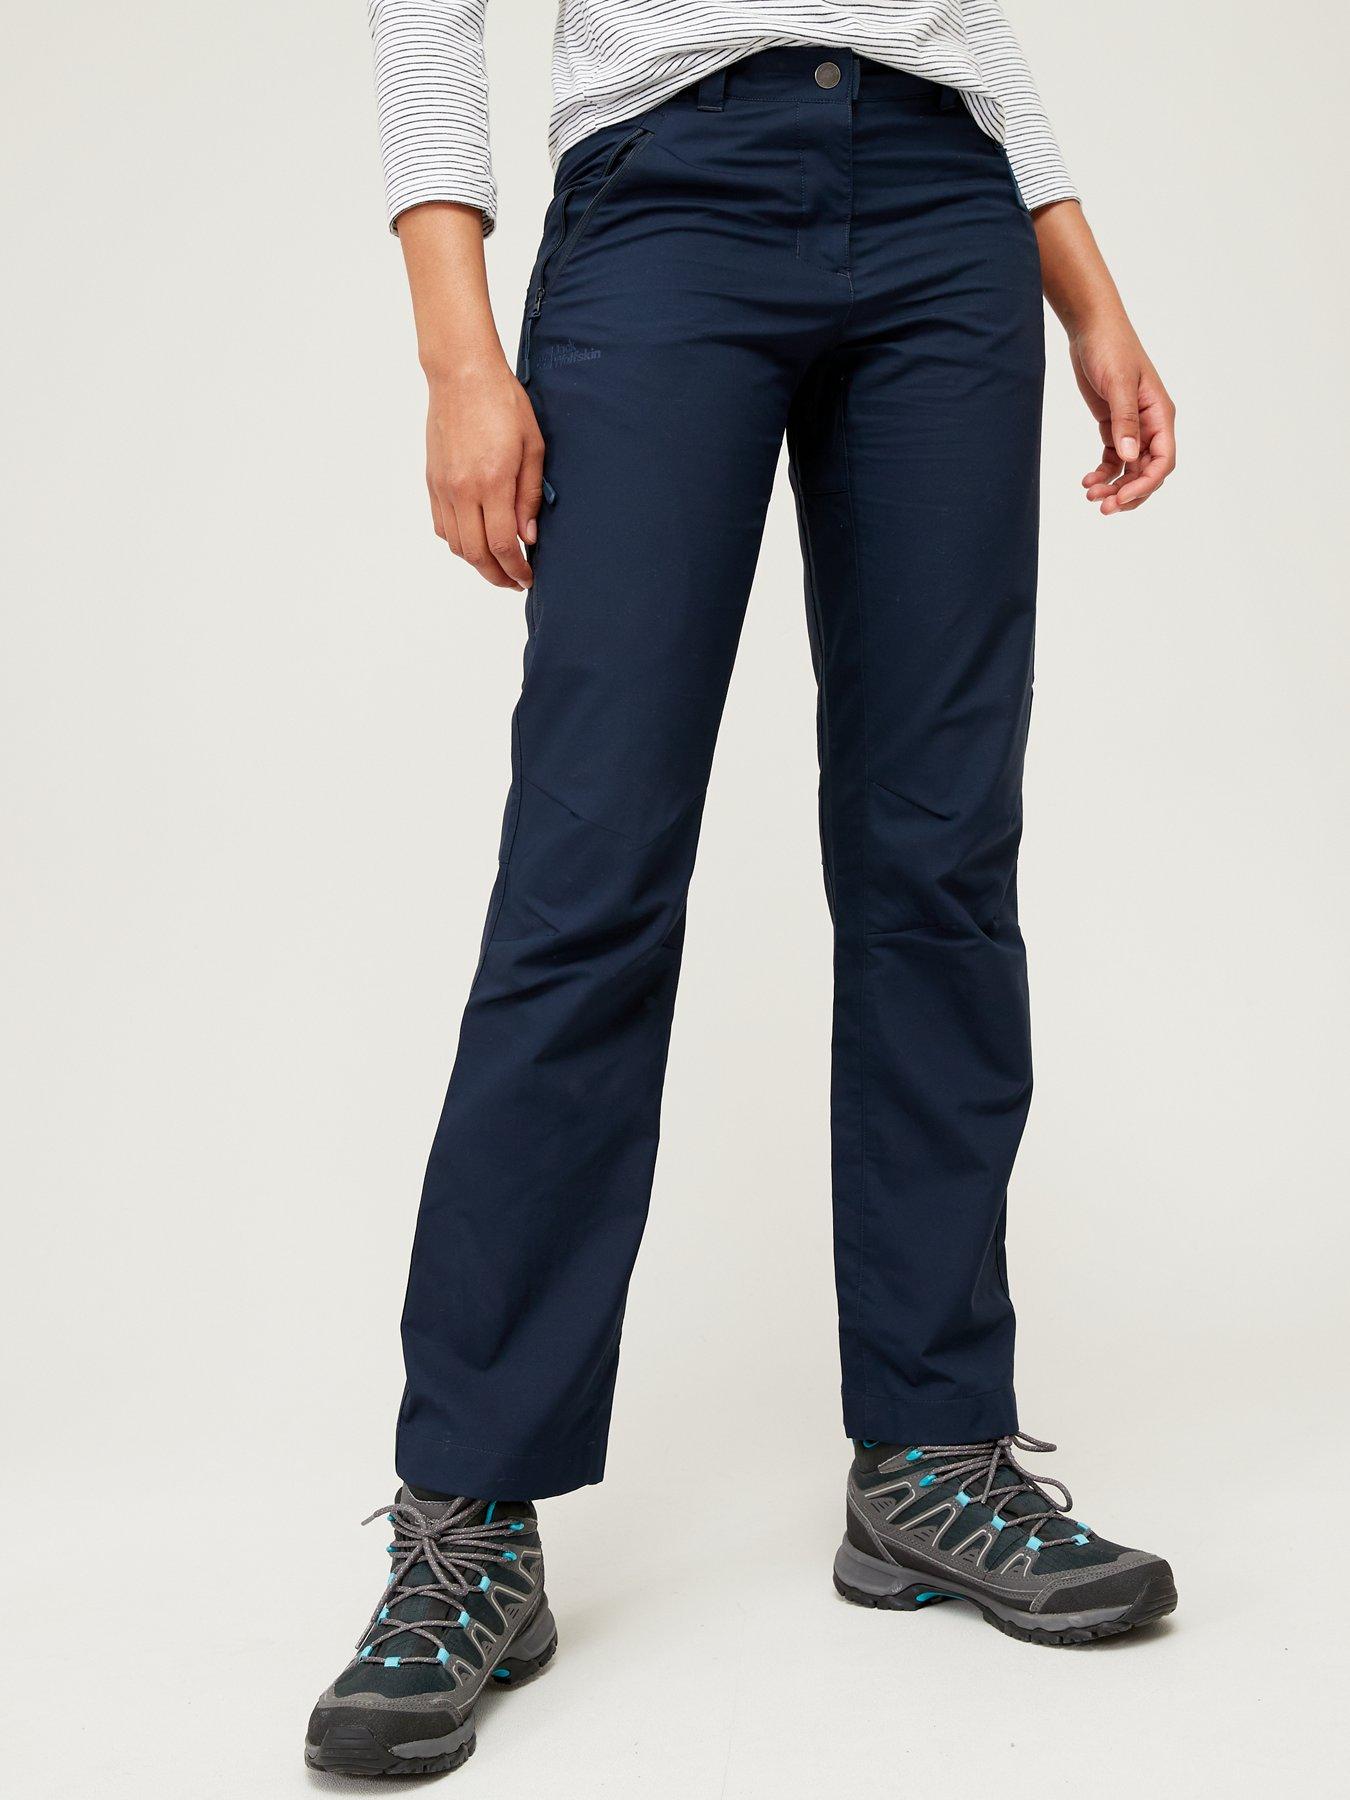 TOG24 Women's Milton Skinny Fit Waterproof Walking Trousers - Khaki